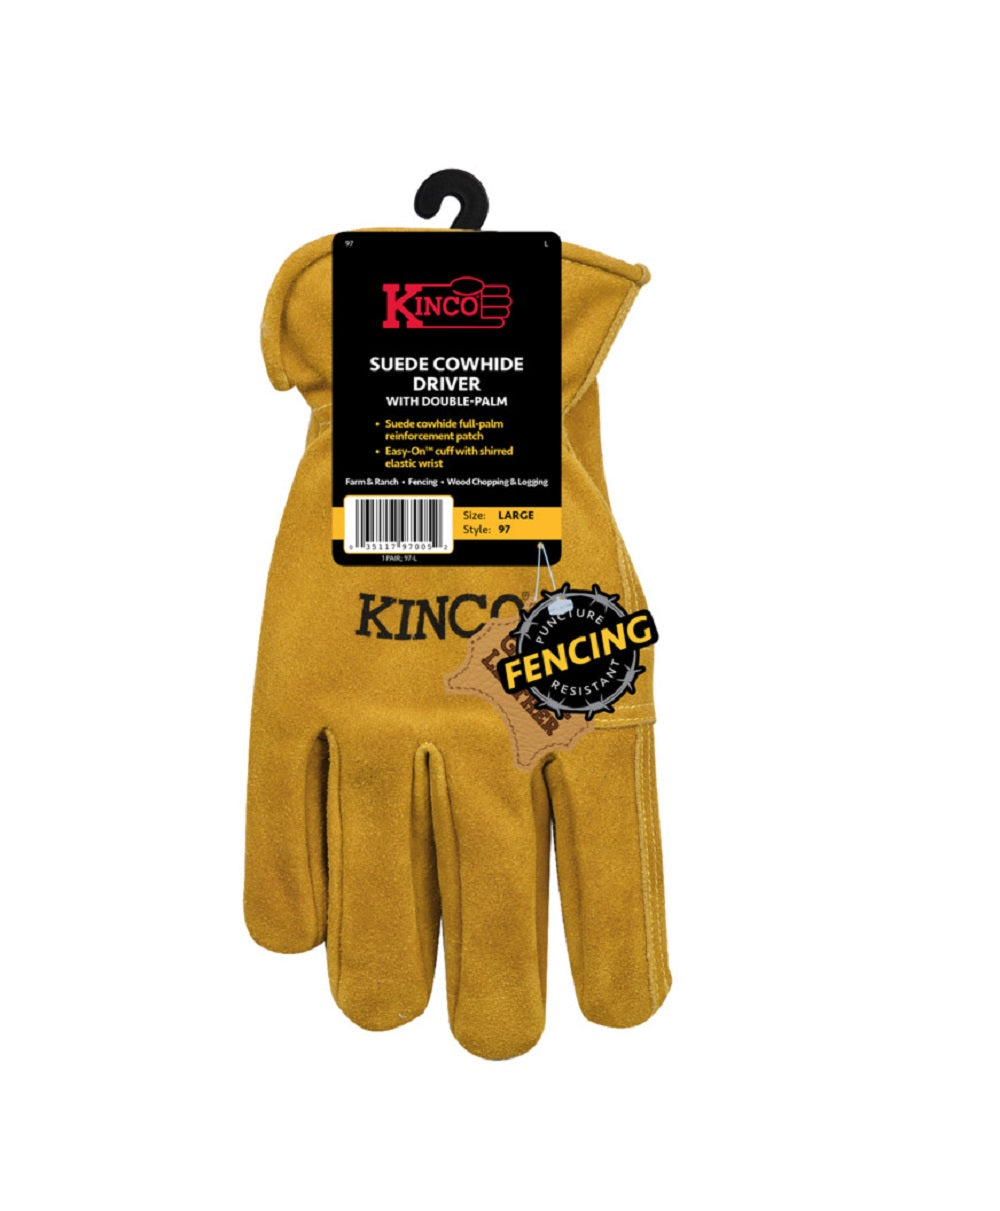 Kinco 97-M Palm Driver Gloves, Medium